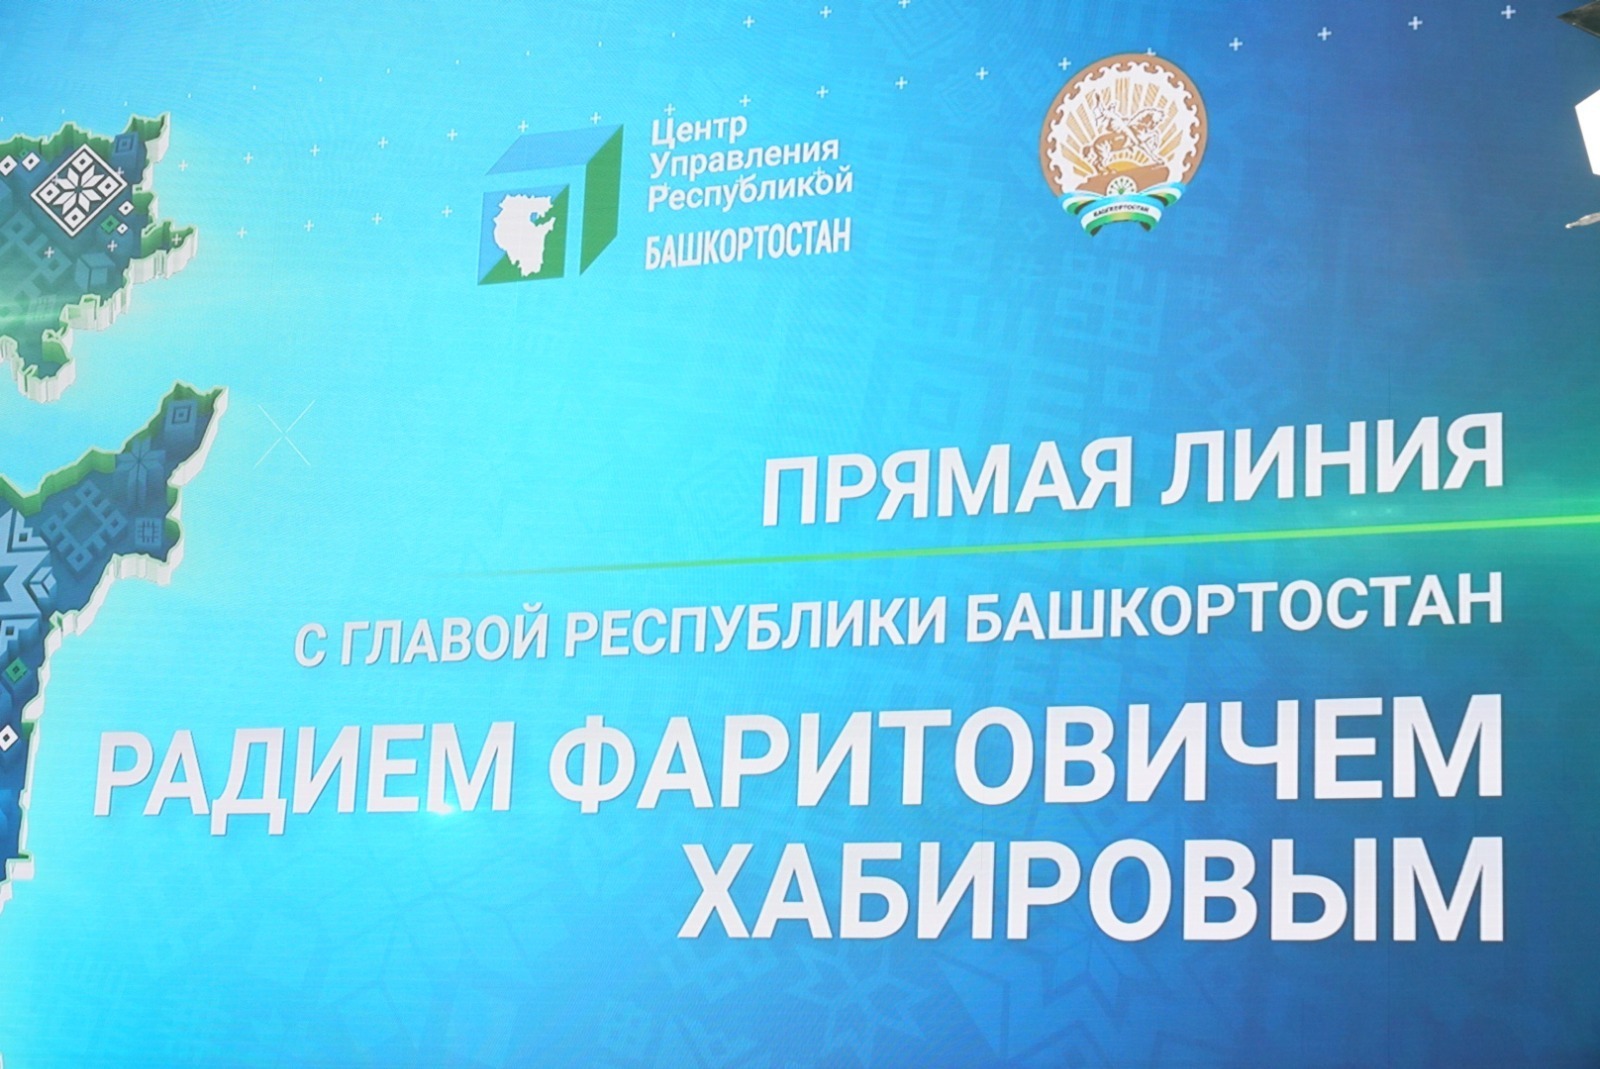 Глава Башкортостана проводит прямую линию с жителями республики